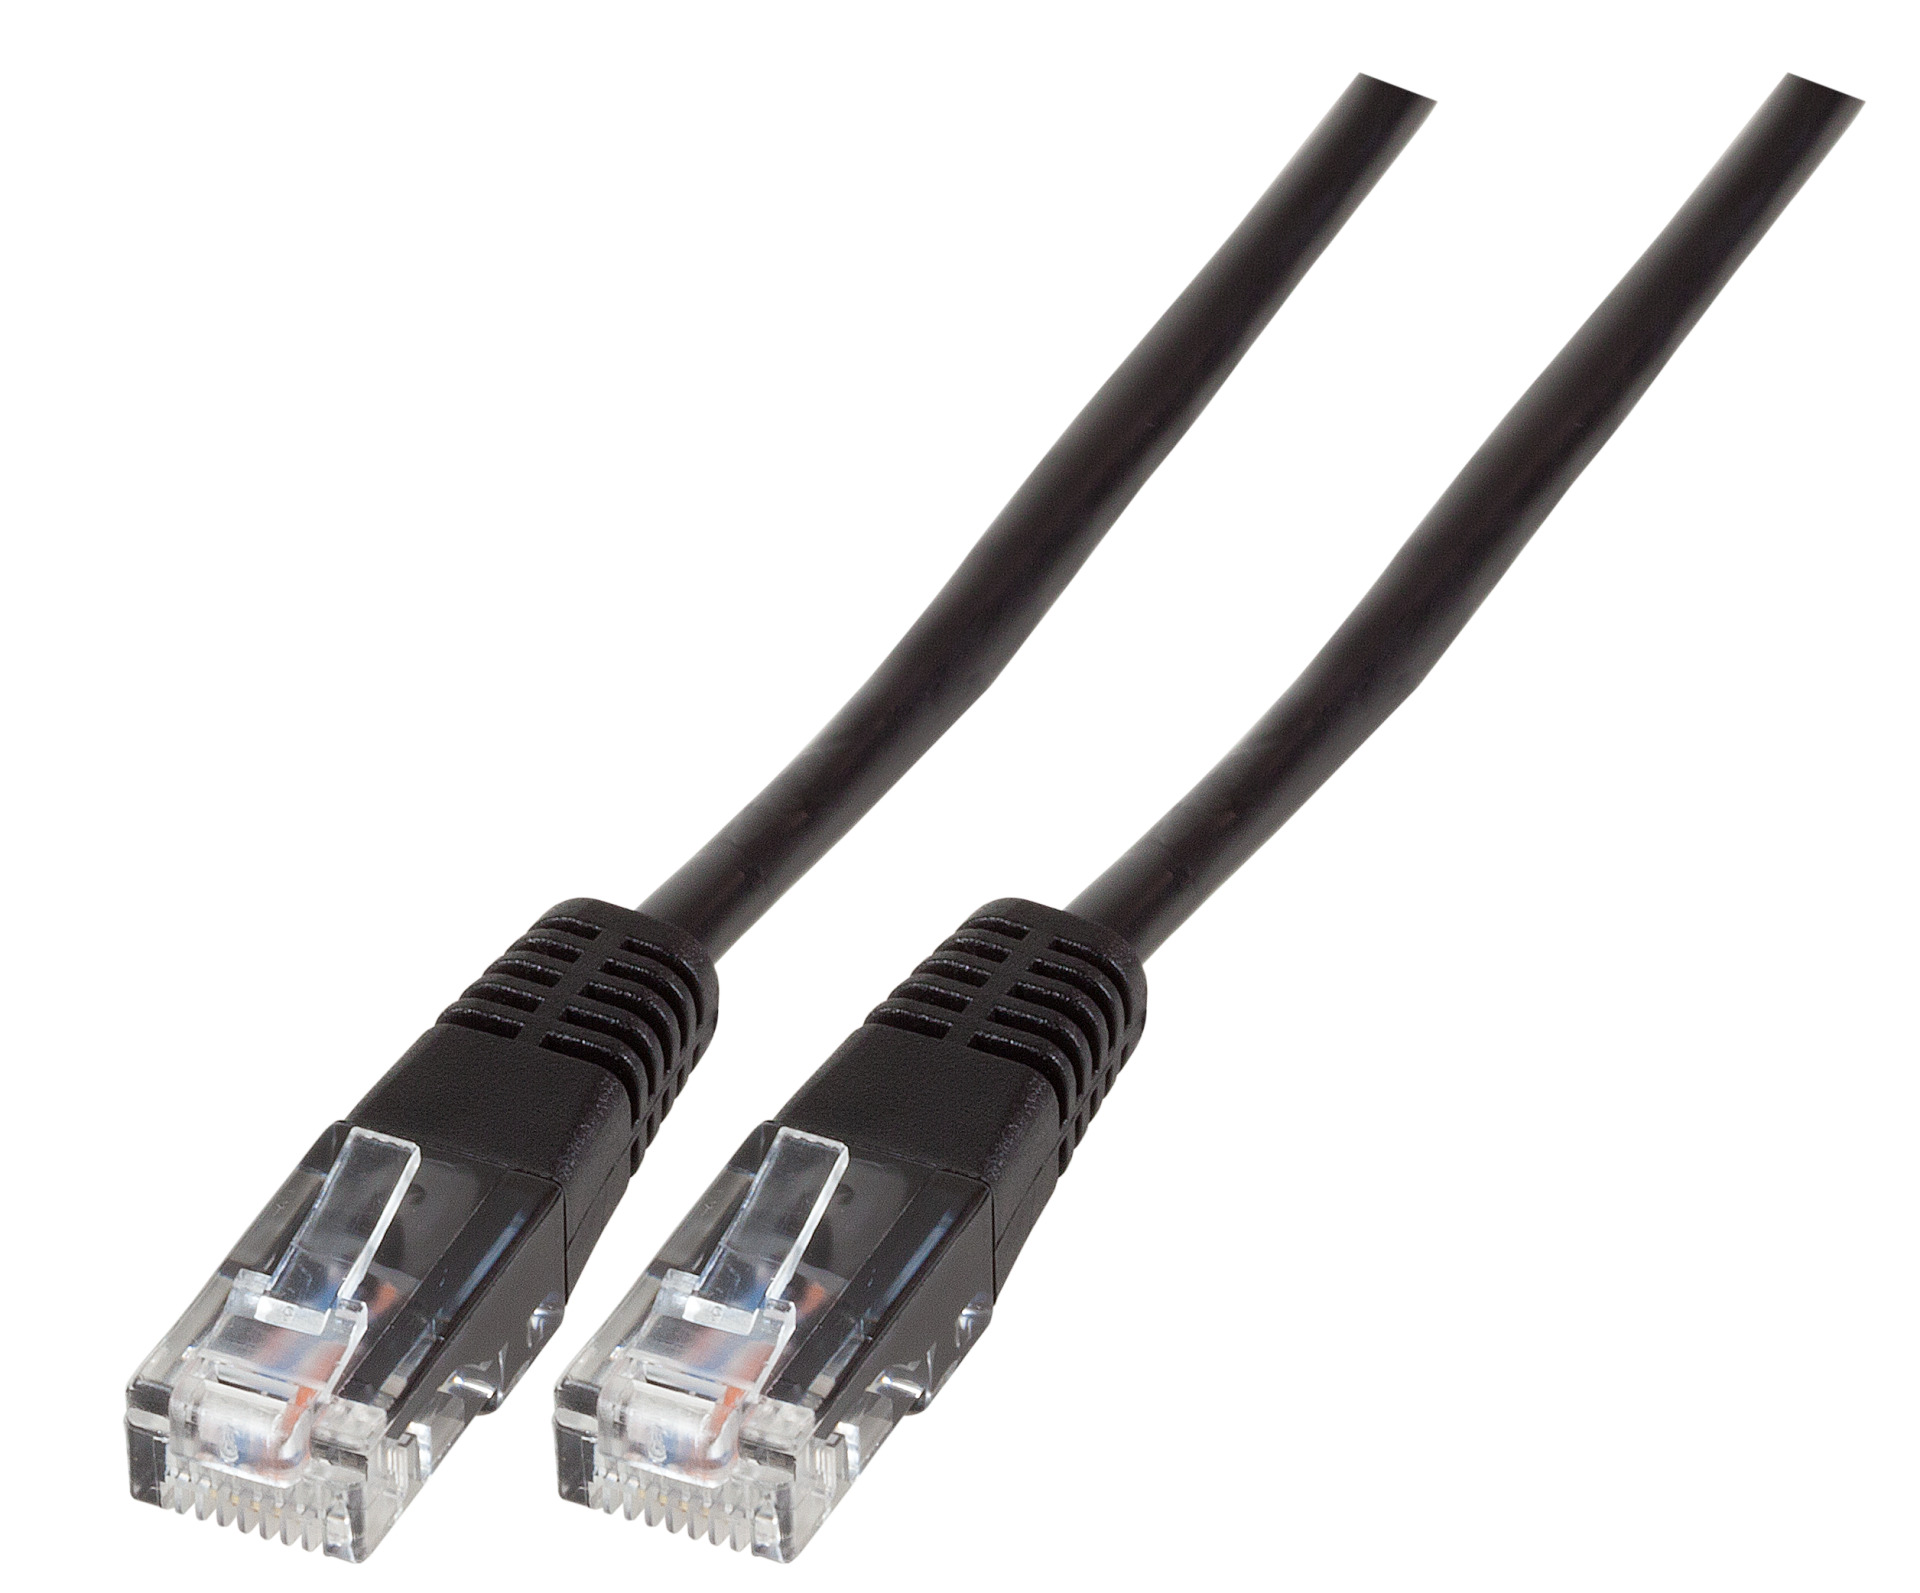 Modular Cable RJ45 (8/4) - RJ45 (8/4), Moulded, Black, 10 m